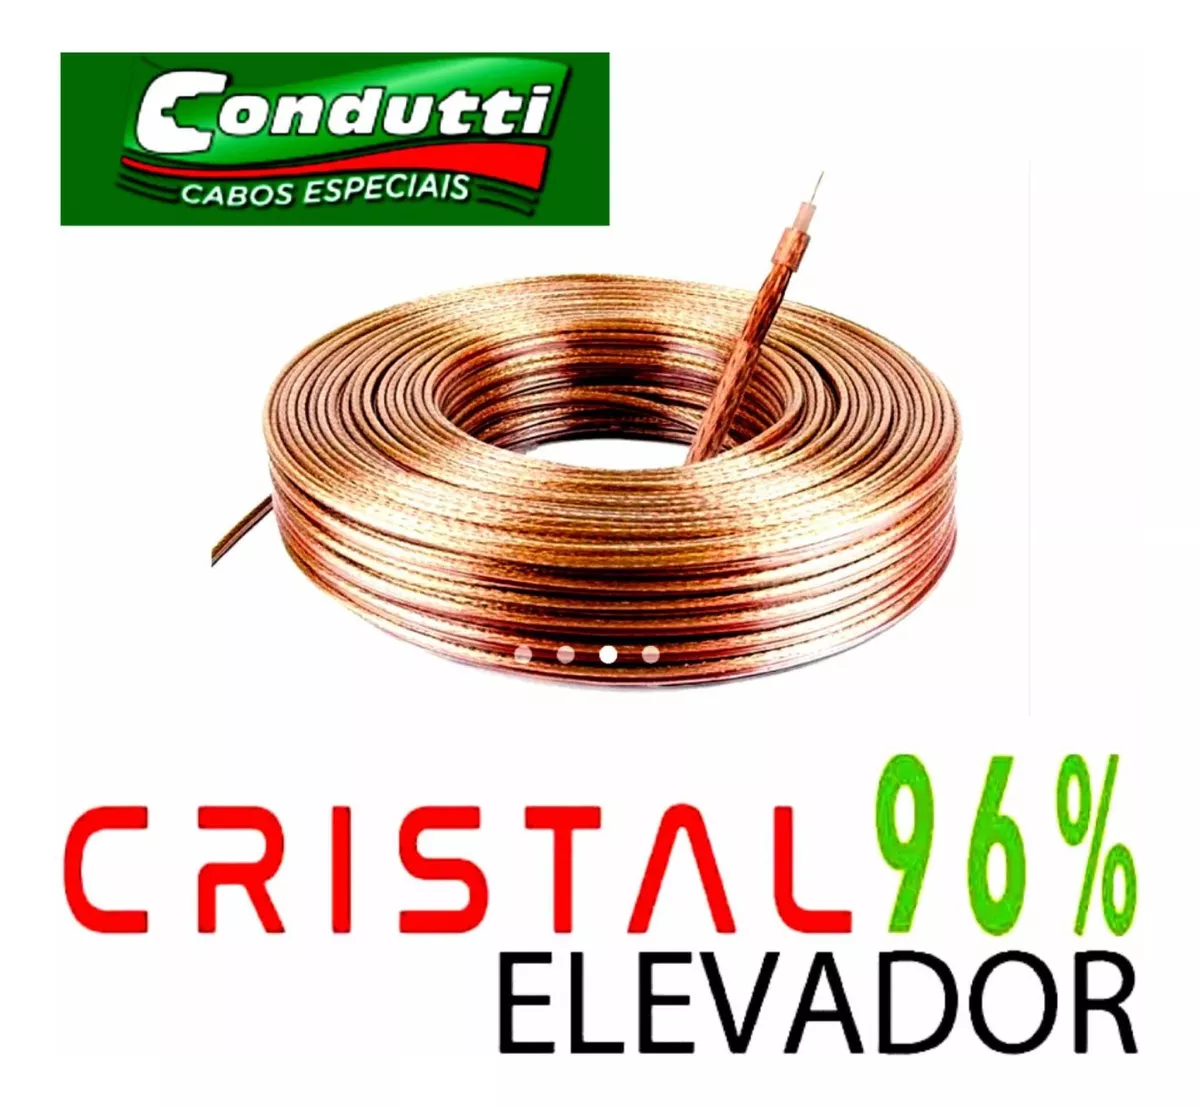 01 Rolox100m Cabo Coaxial Rg-59 6,00mm Elevador Cristal 96% 